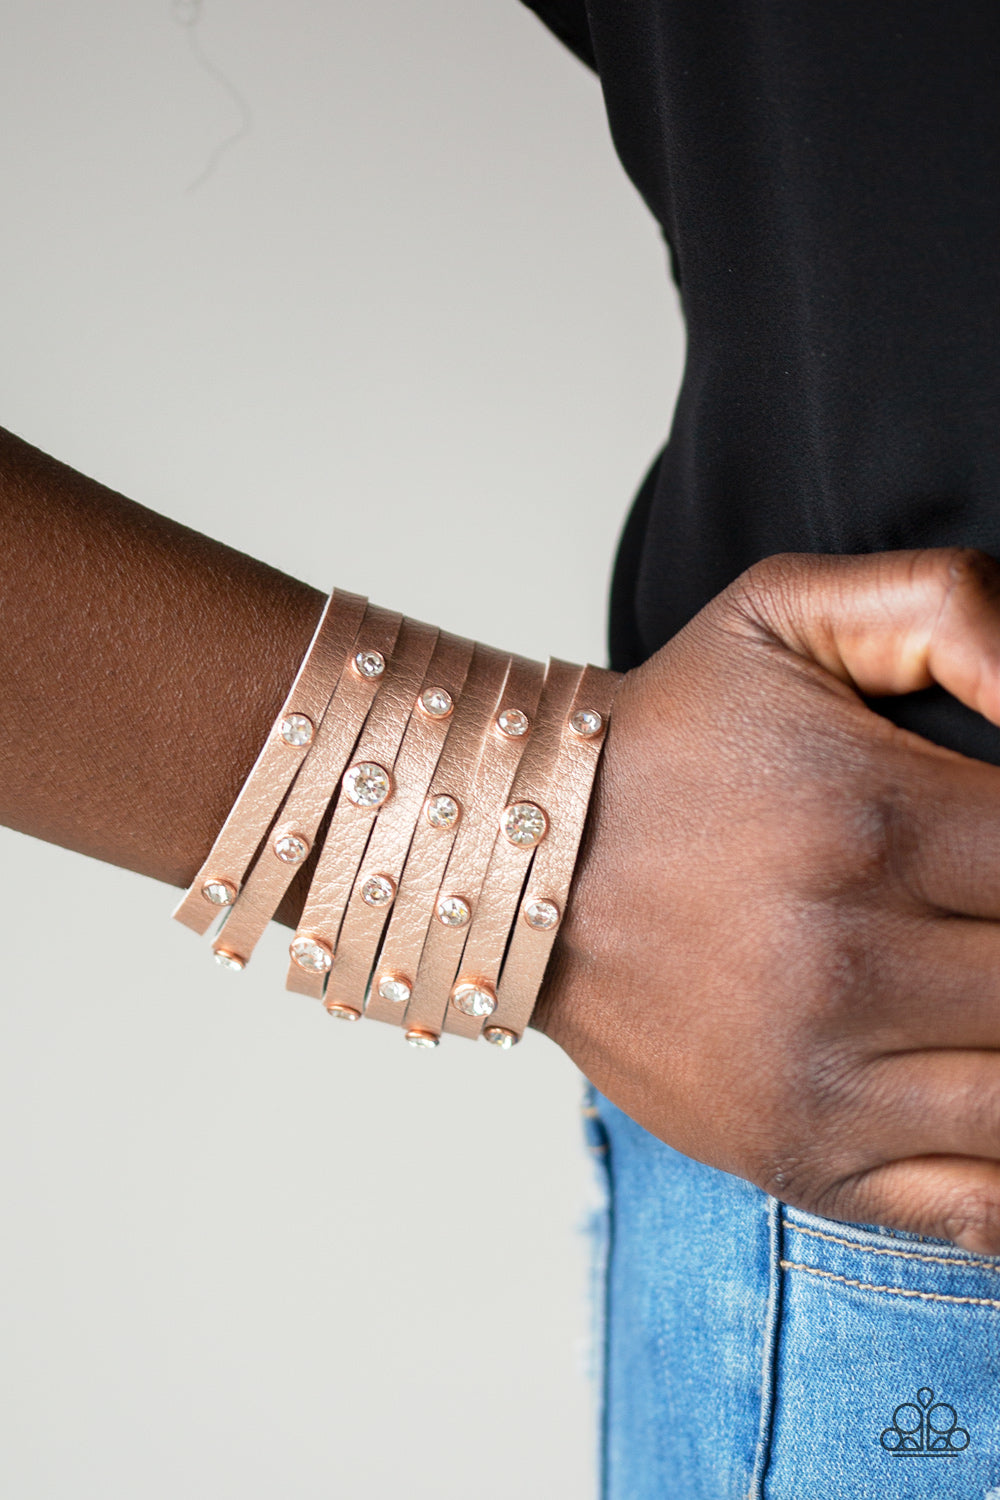 Go-Getter Glamorous - Copper wrap bracelet